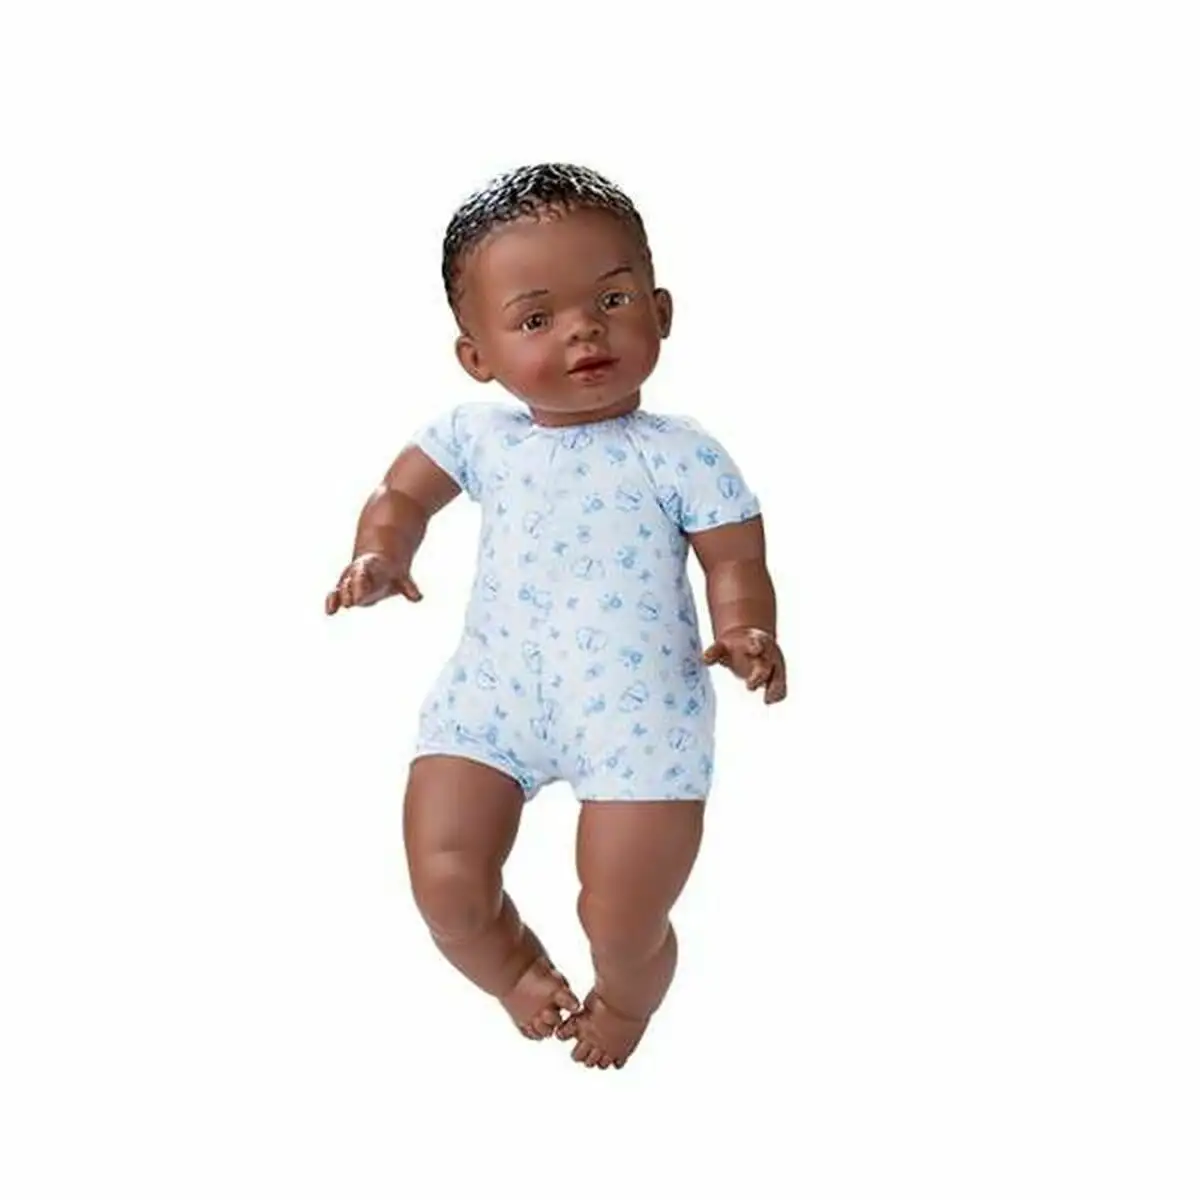 Bebe poupee berjuan newborn africaine 45 cm_3441. DIAYTAR SENEGAL - Votre Destinée Shopping Personnalisée. Plongez dans notre boutique en ligne et créez votre propre expérience de shopping en choisissant parmi nos produits variés.